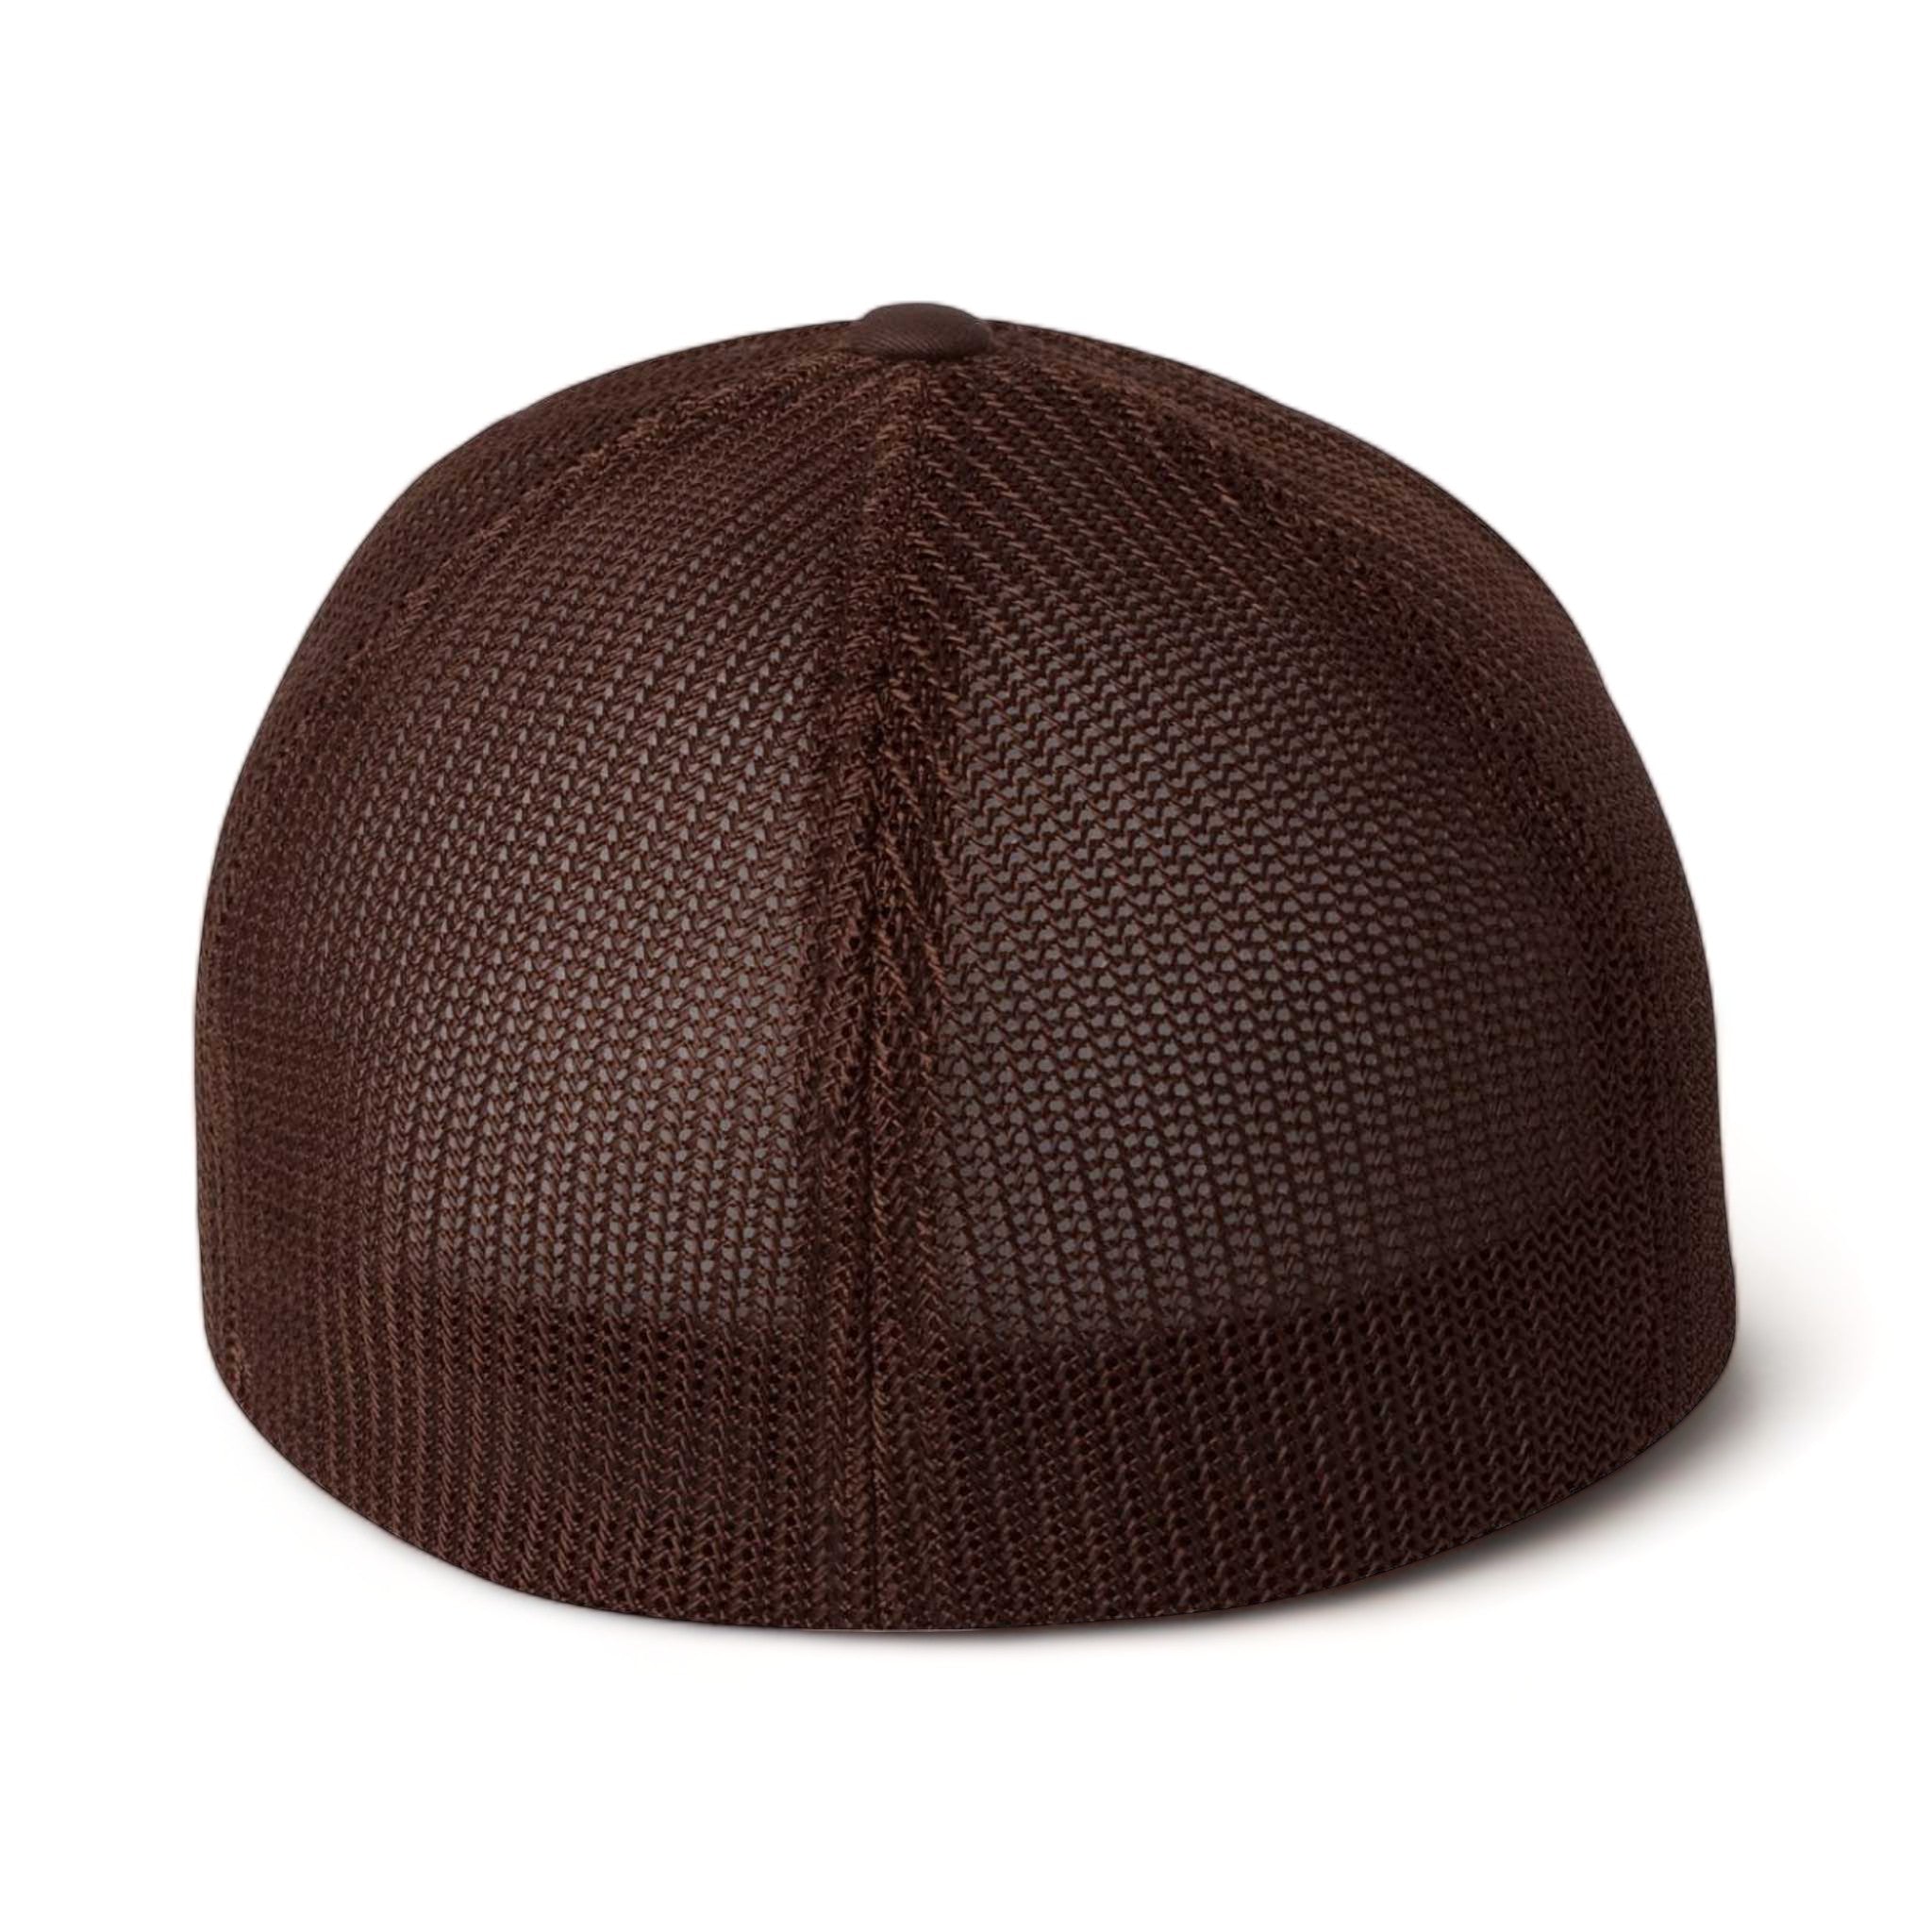 Back view of Flexfit 6511 custom hat in brown